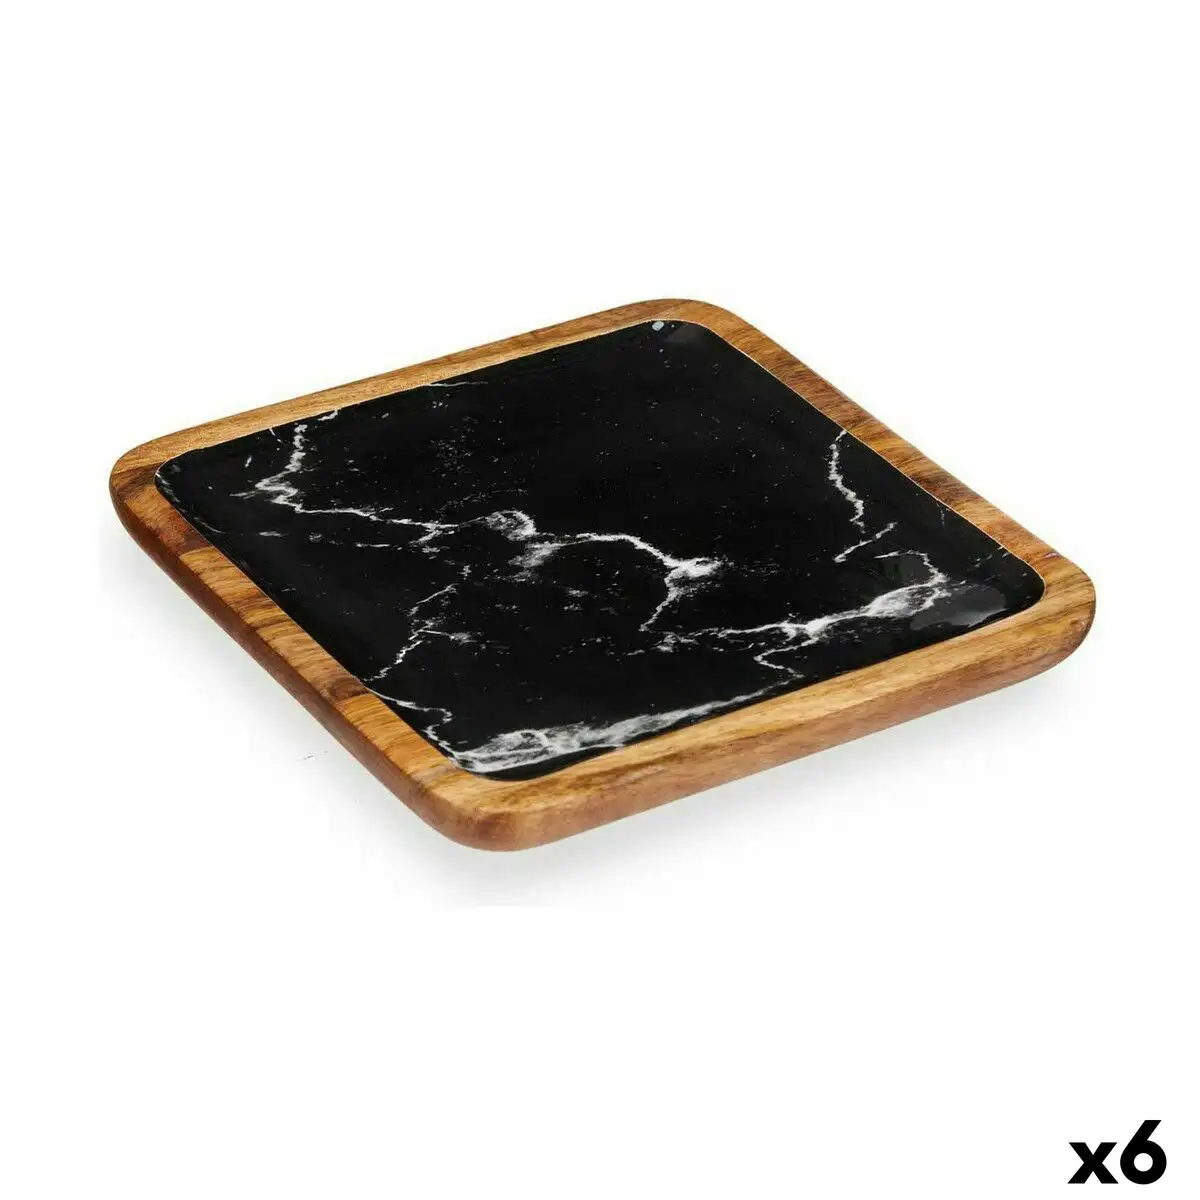 Centre de table marbre 25 x 25 cm marron noir resine bois de manguier 6 unites _5368. Bienvenue sur DIAYTAR SENEGAL - Où Chaque Détail compte. Plongez dans notre univers et choisissez des produits qui ajoutent de l'éclat et de la joie à votre quotidien.